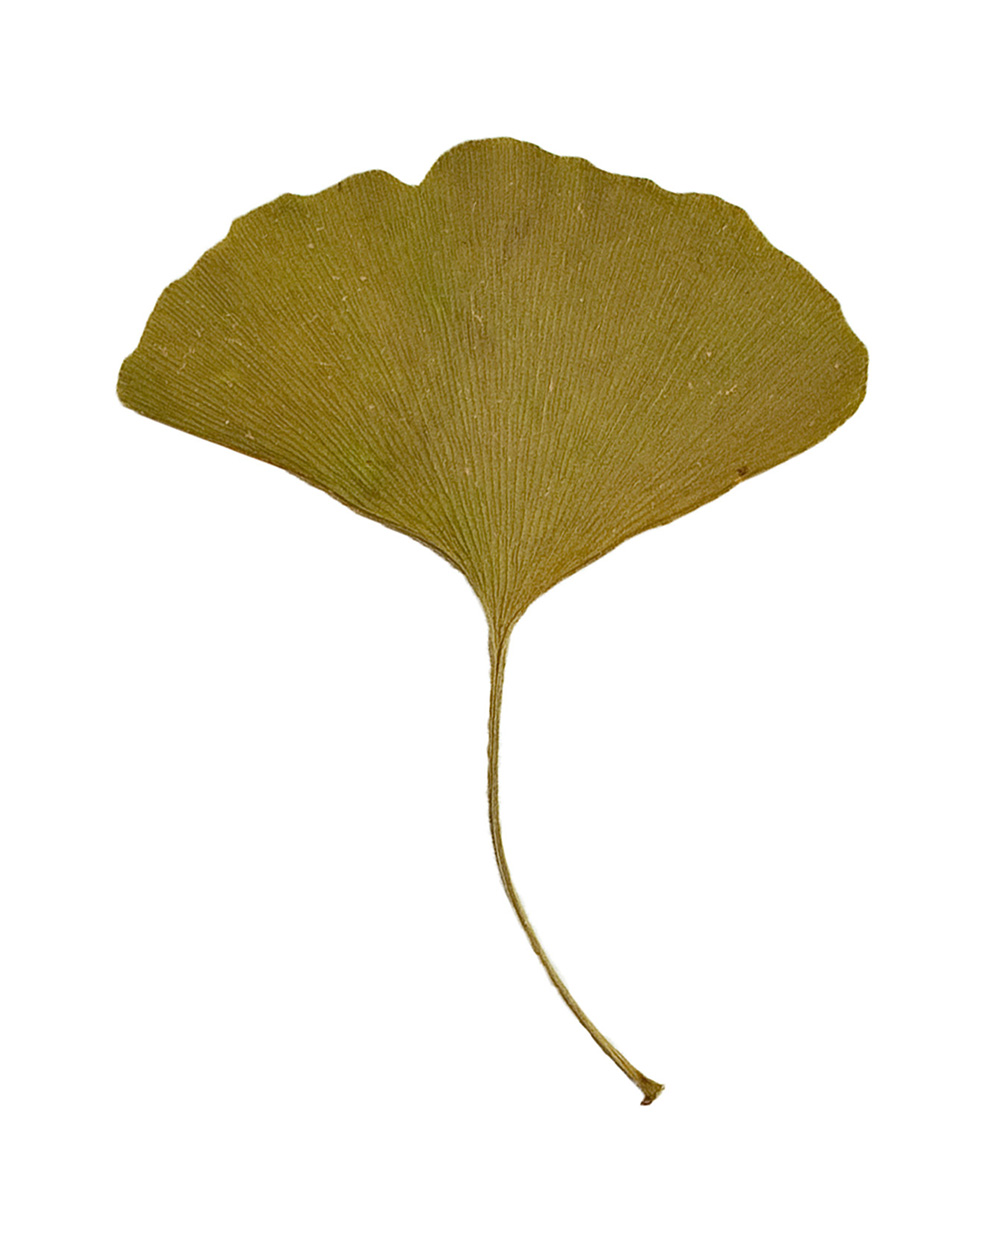 Ginkgo leaf, 2021.